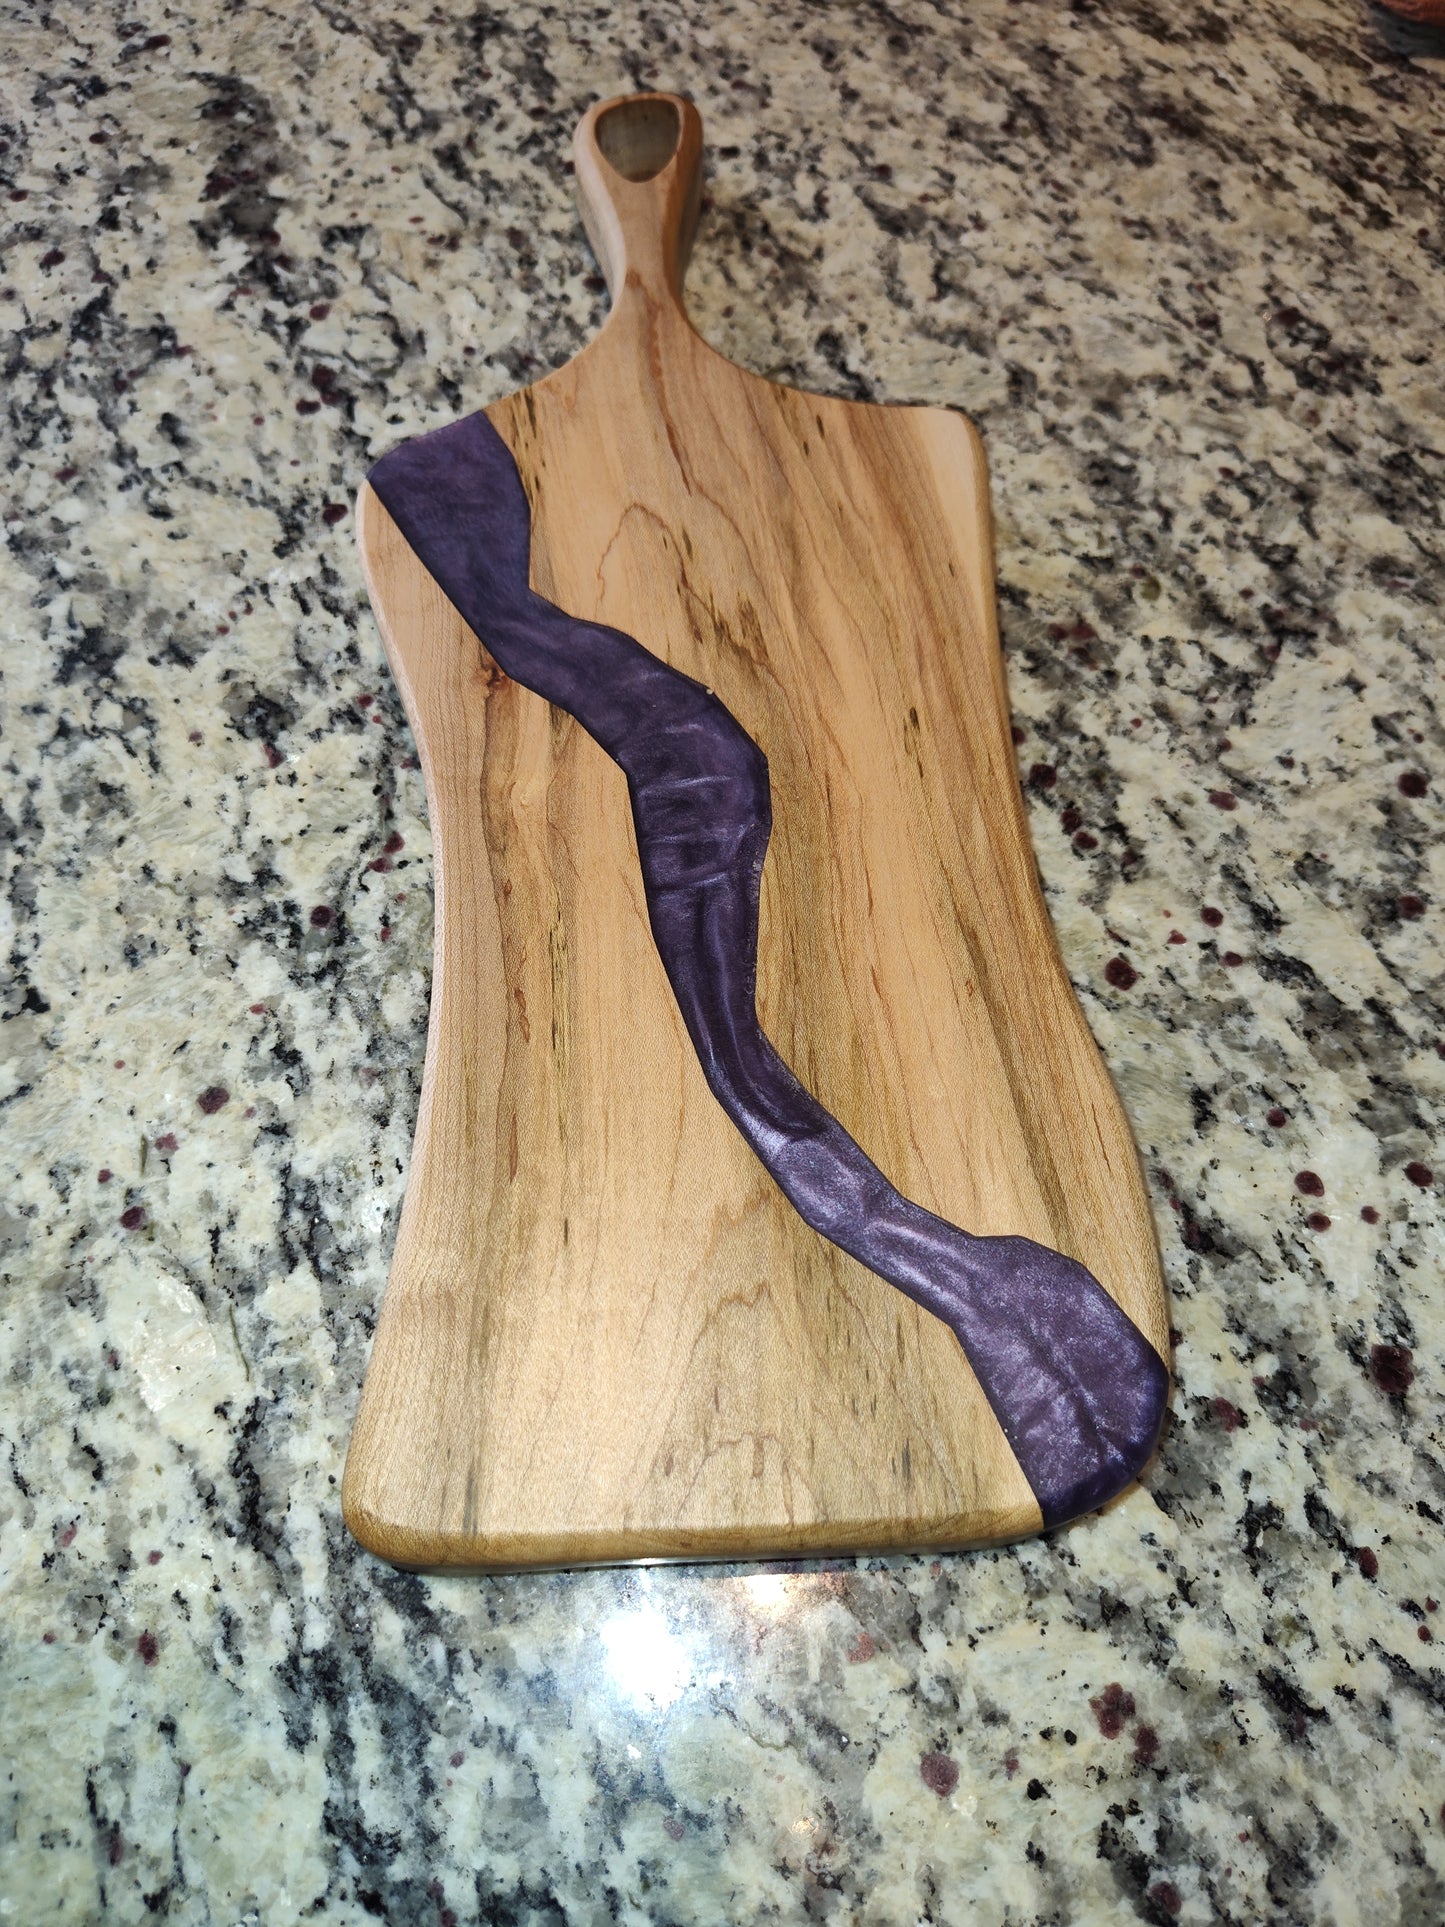 Small purple charcuterie board